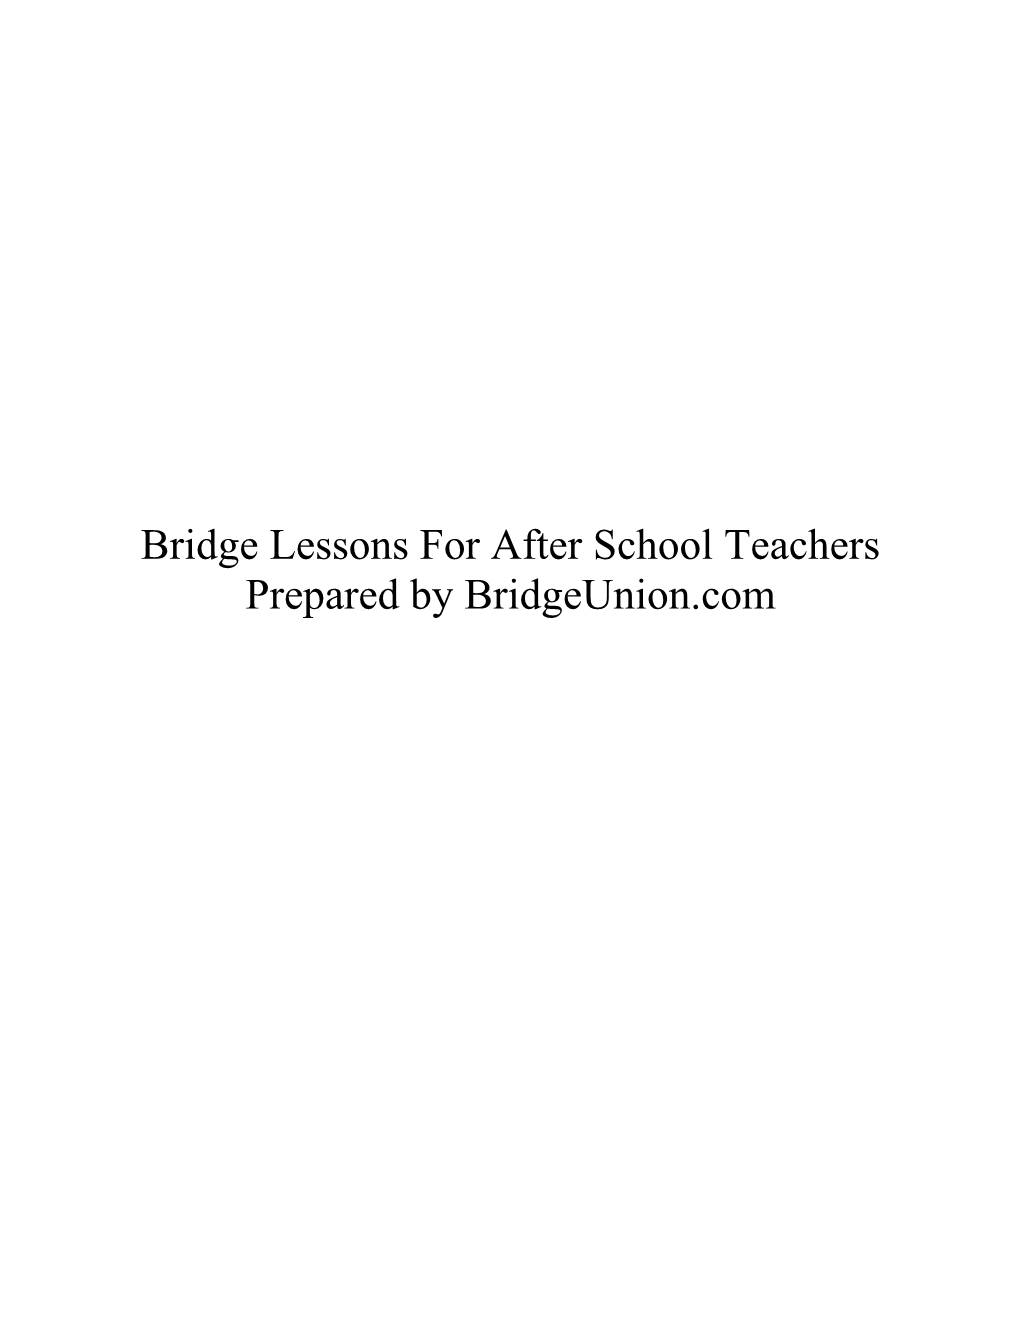 Bridge Lessons for After-School Teachers